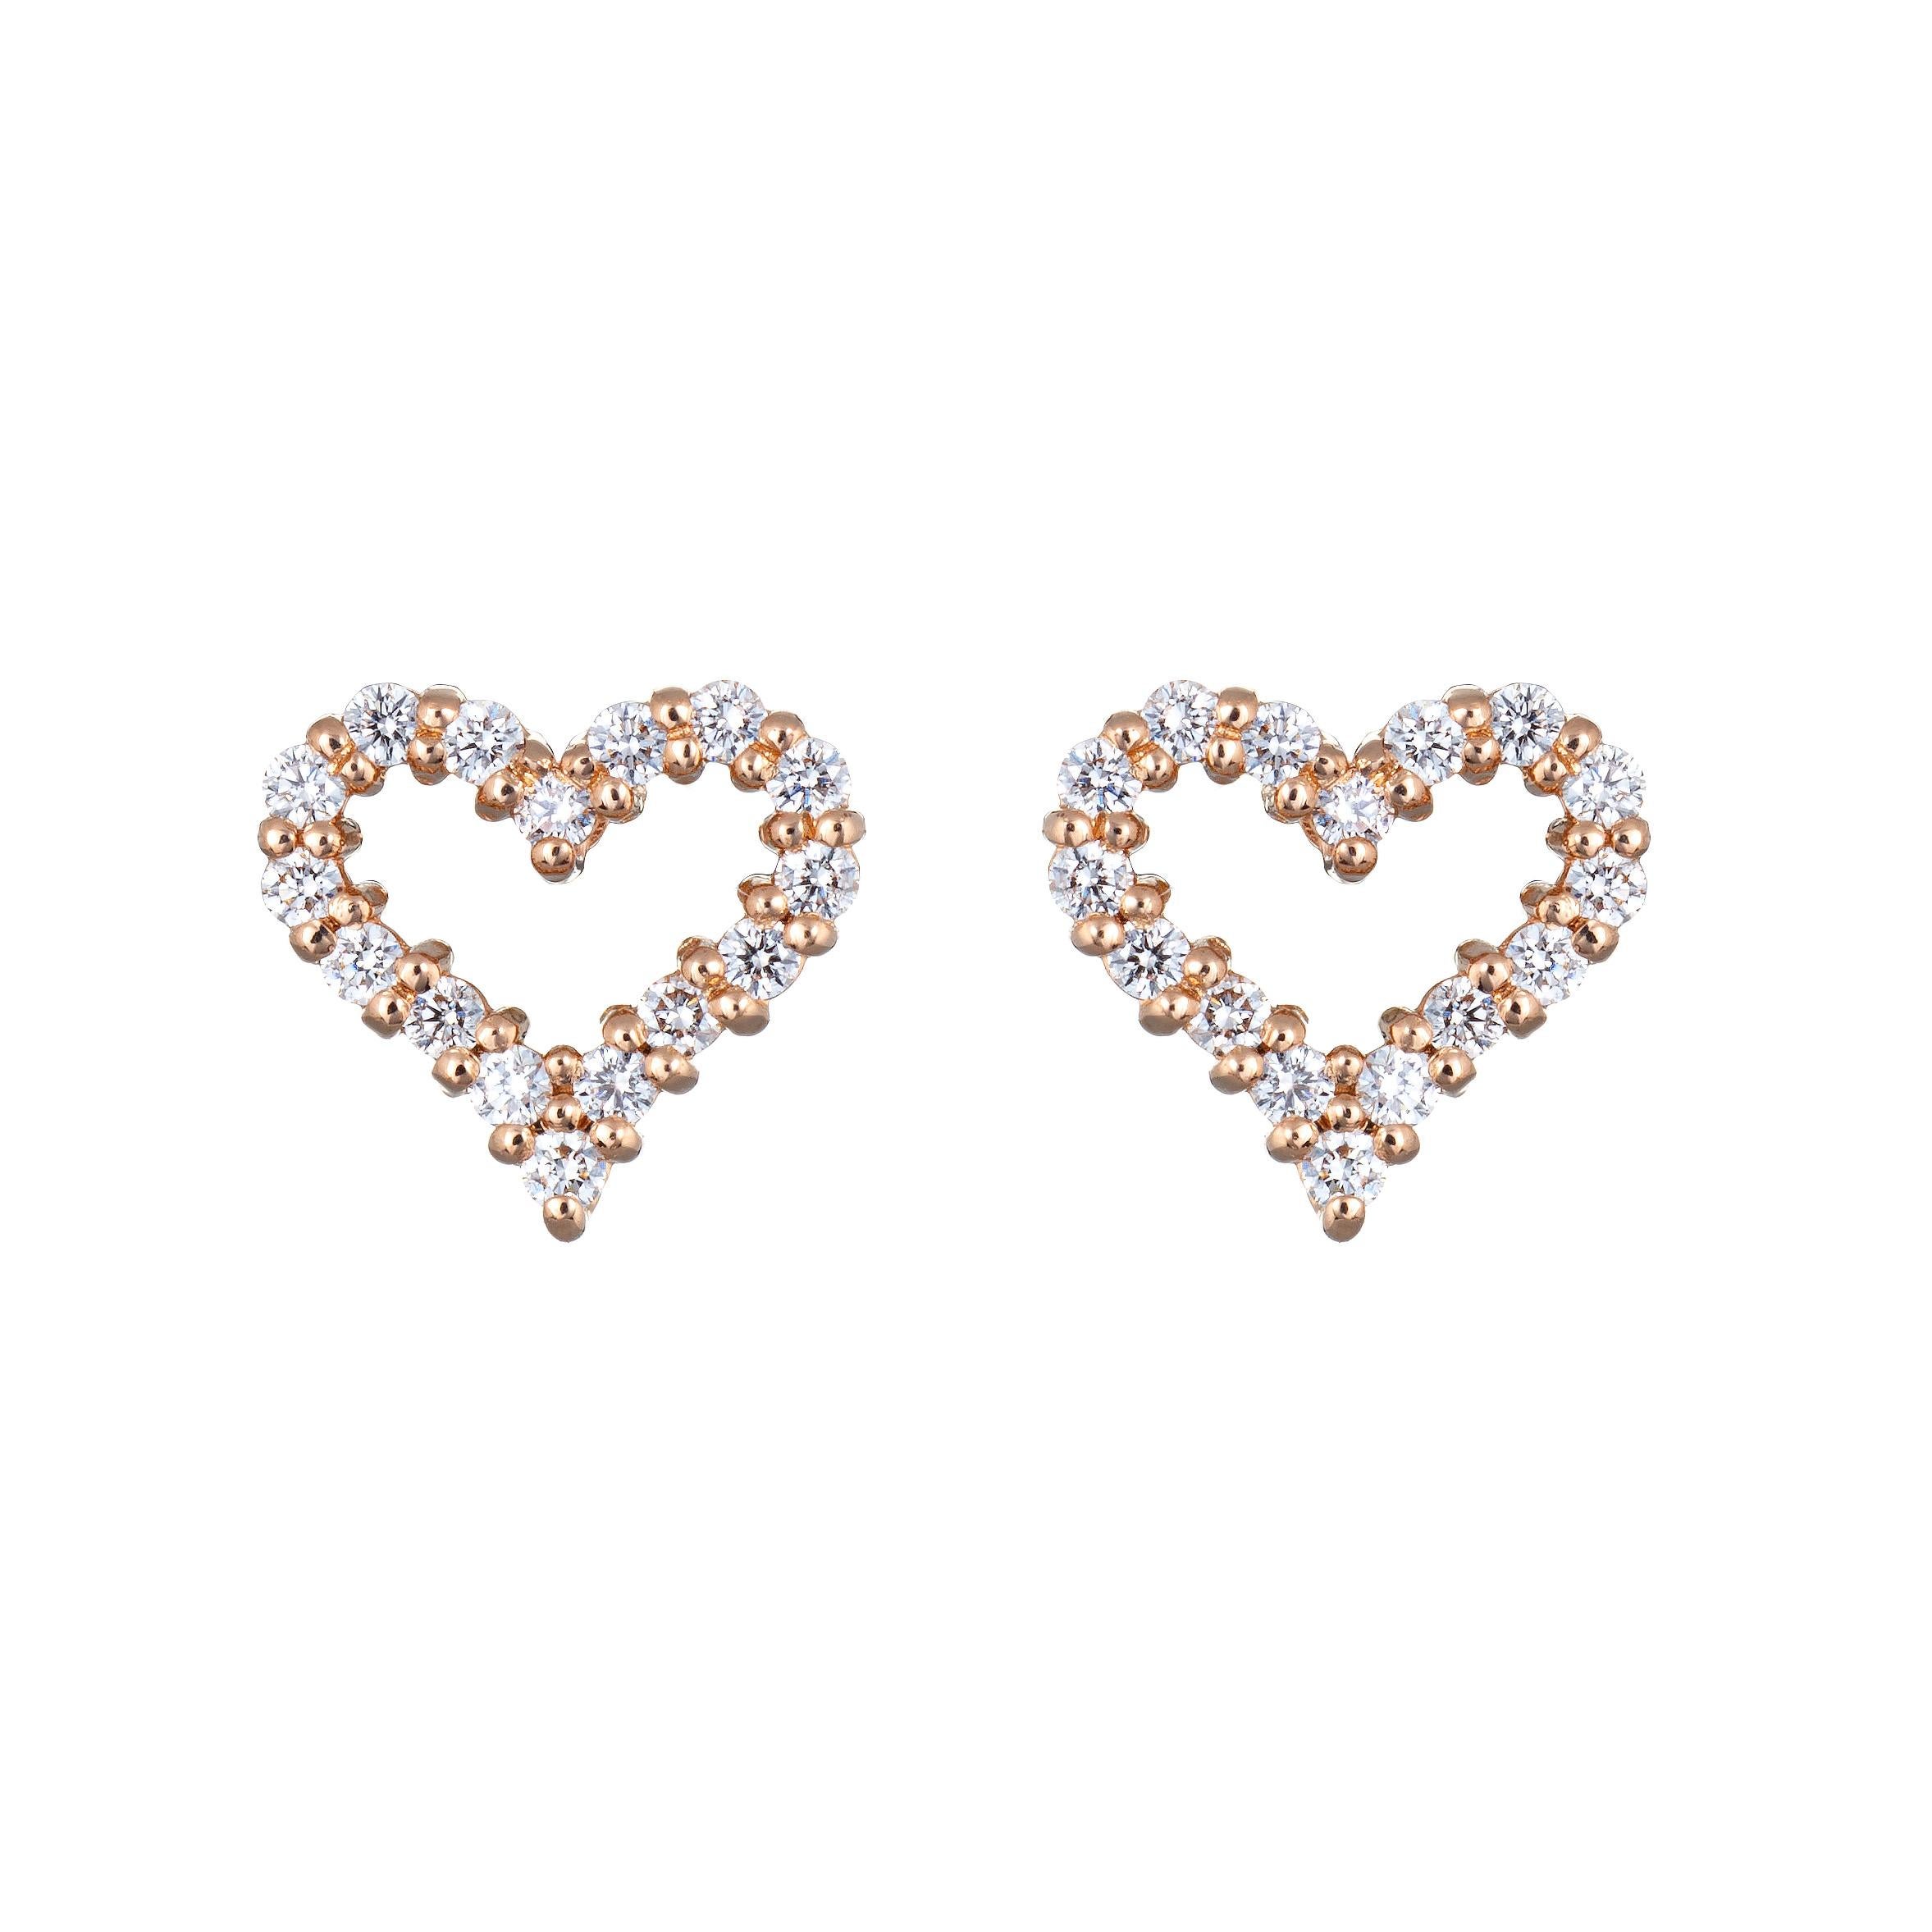 tiffany rose gold heart earrings